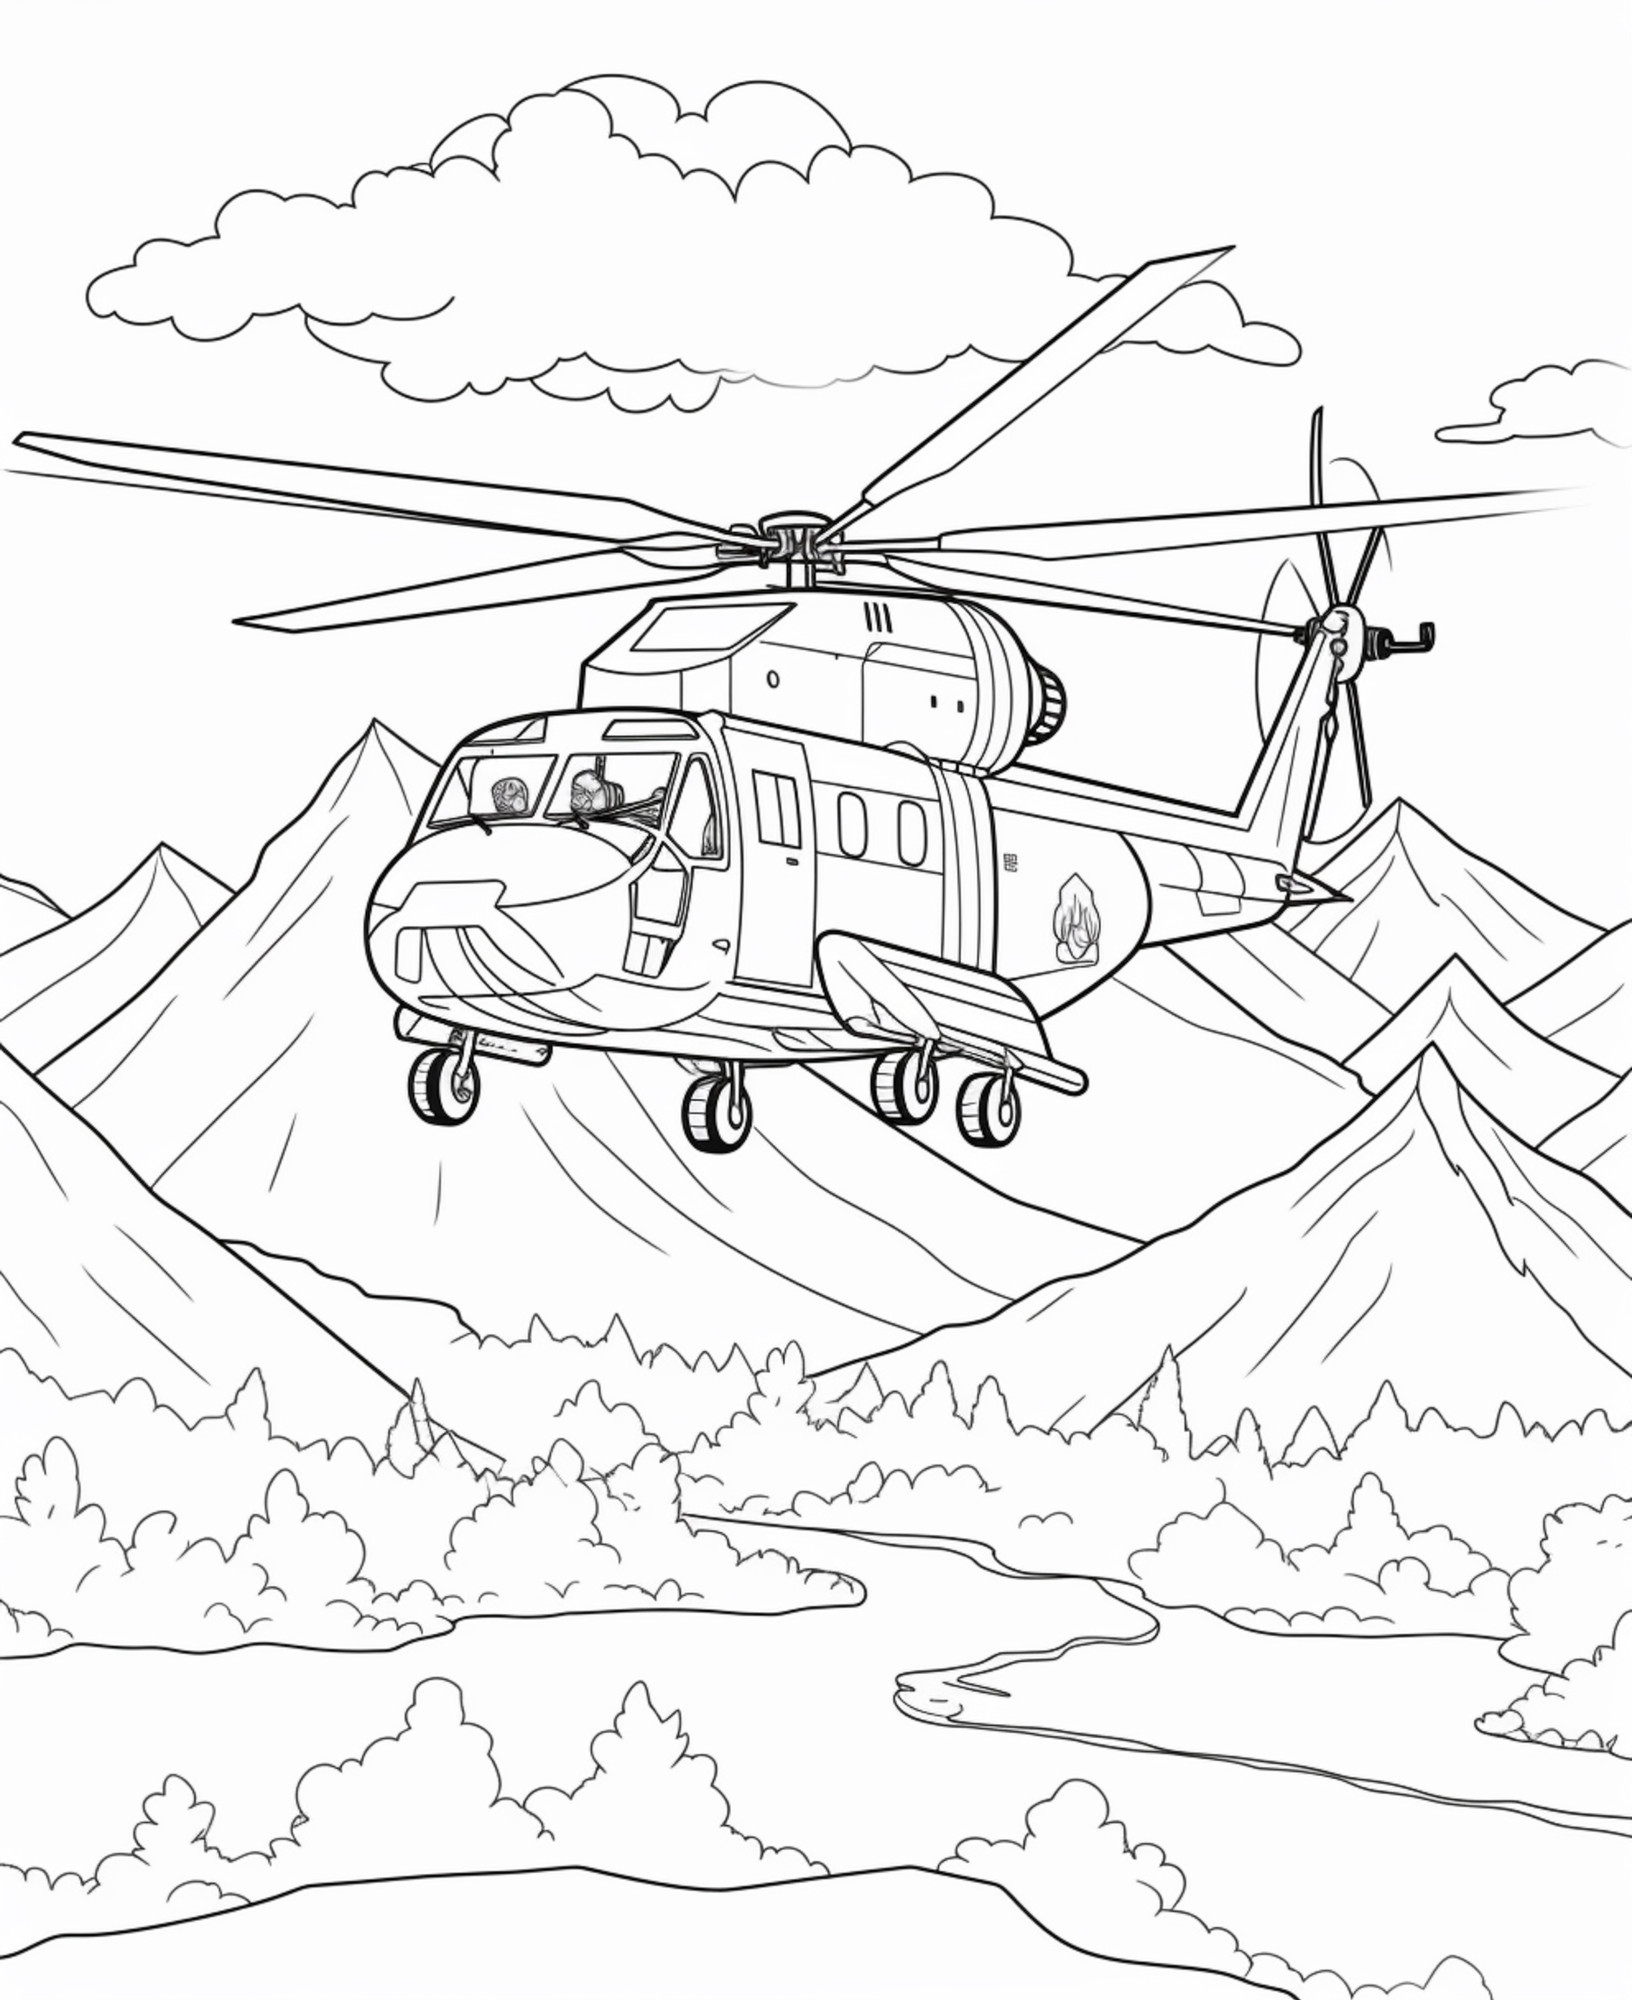 Раскраска для детей: вертолет «Горный орел»